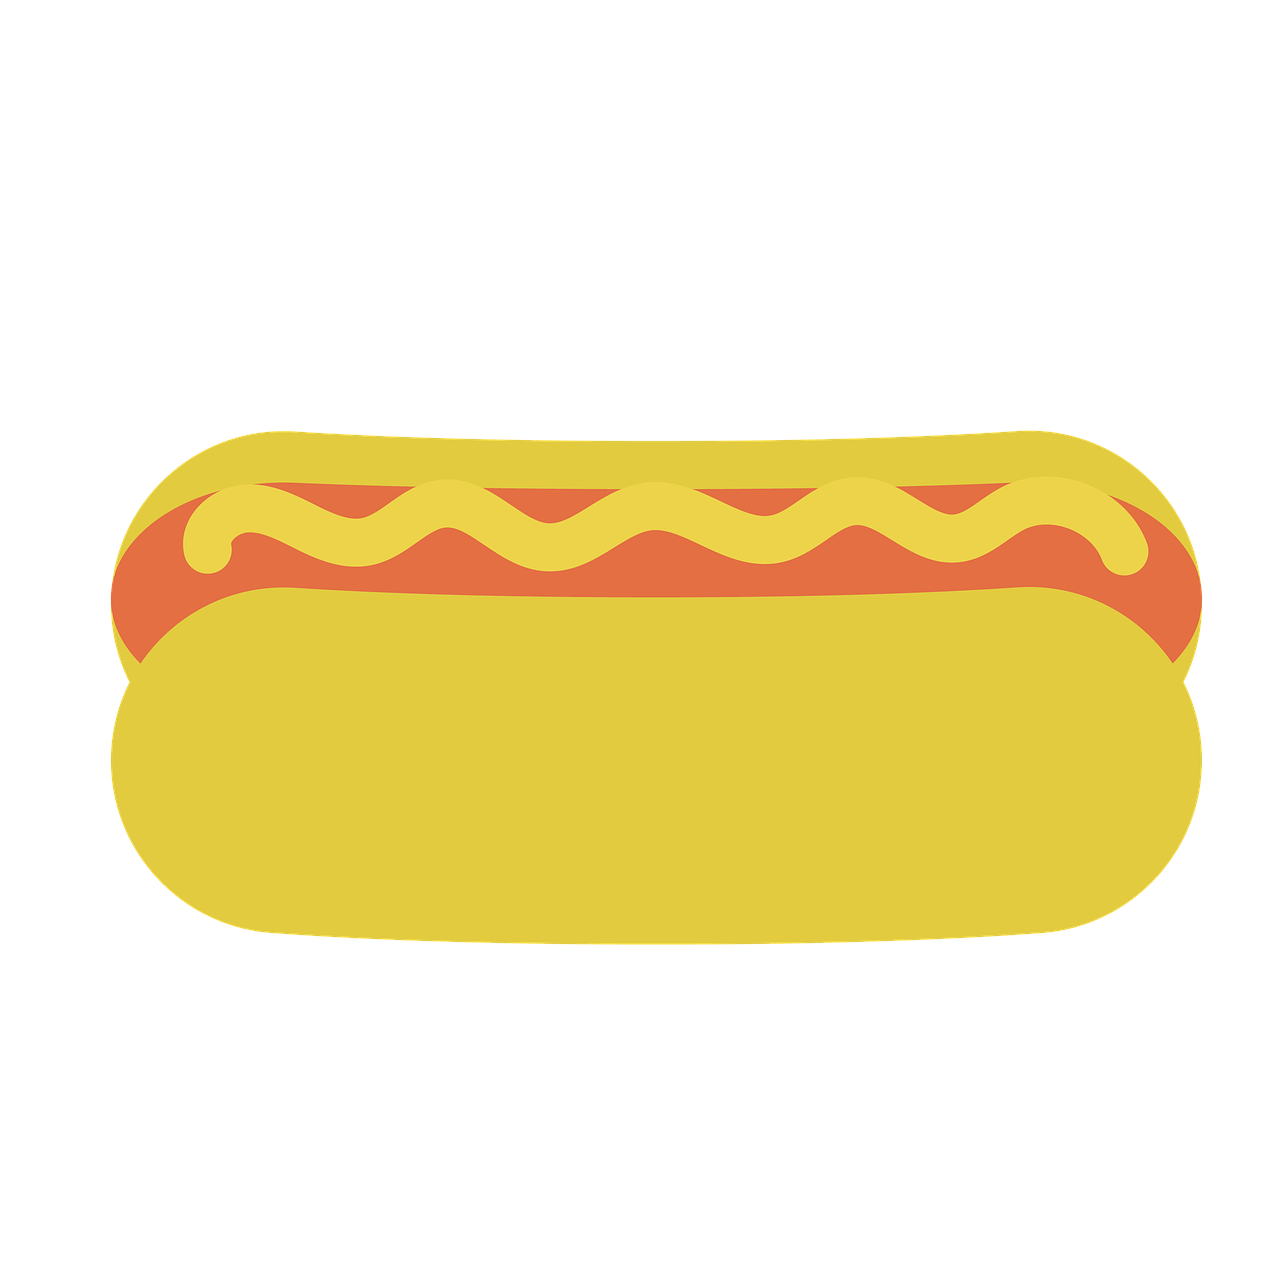 Cheesy Hot Dogs